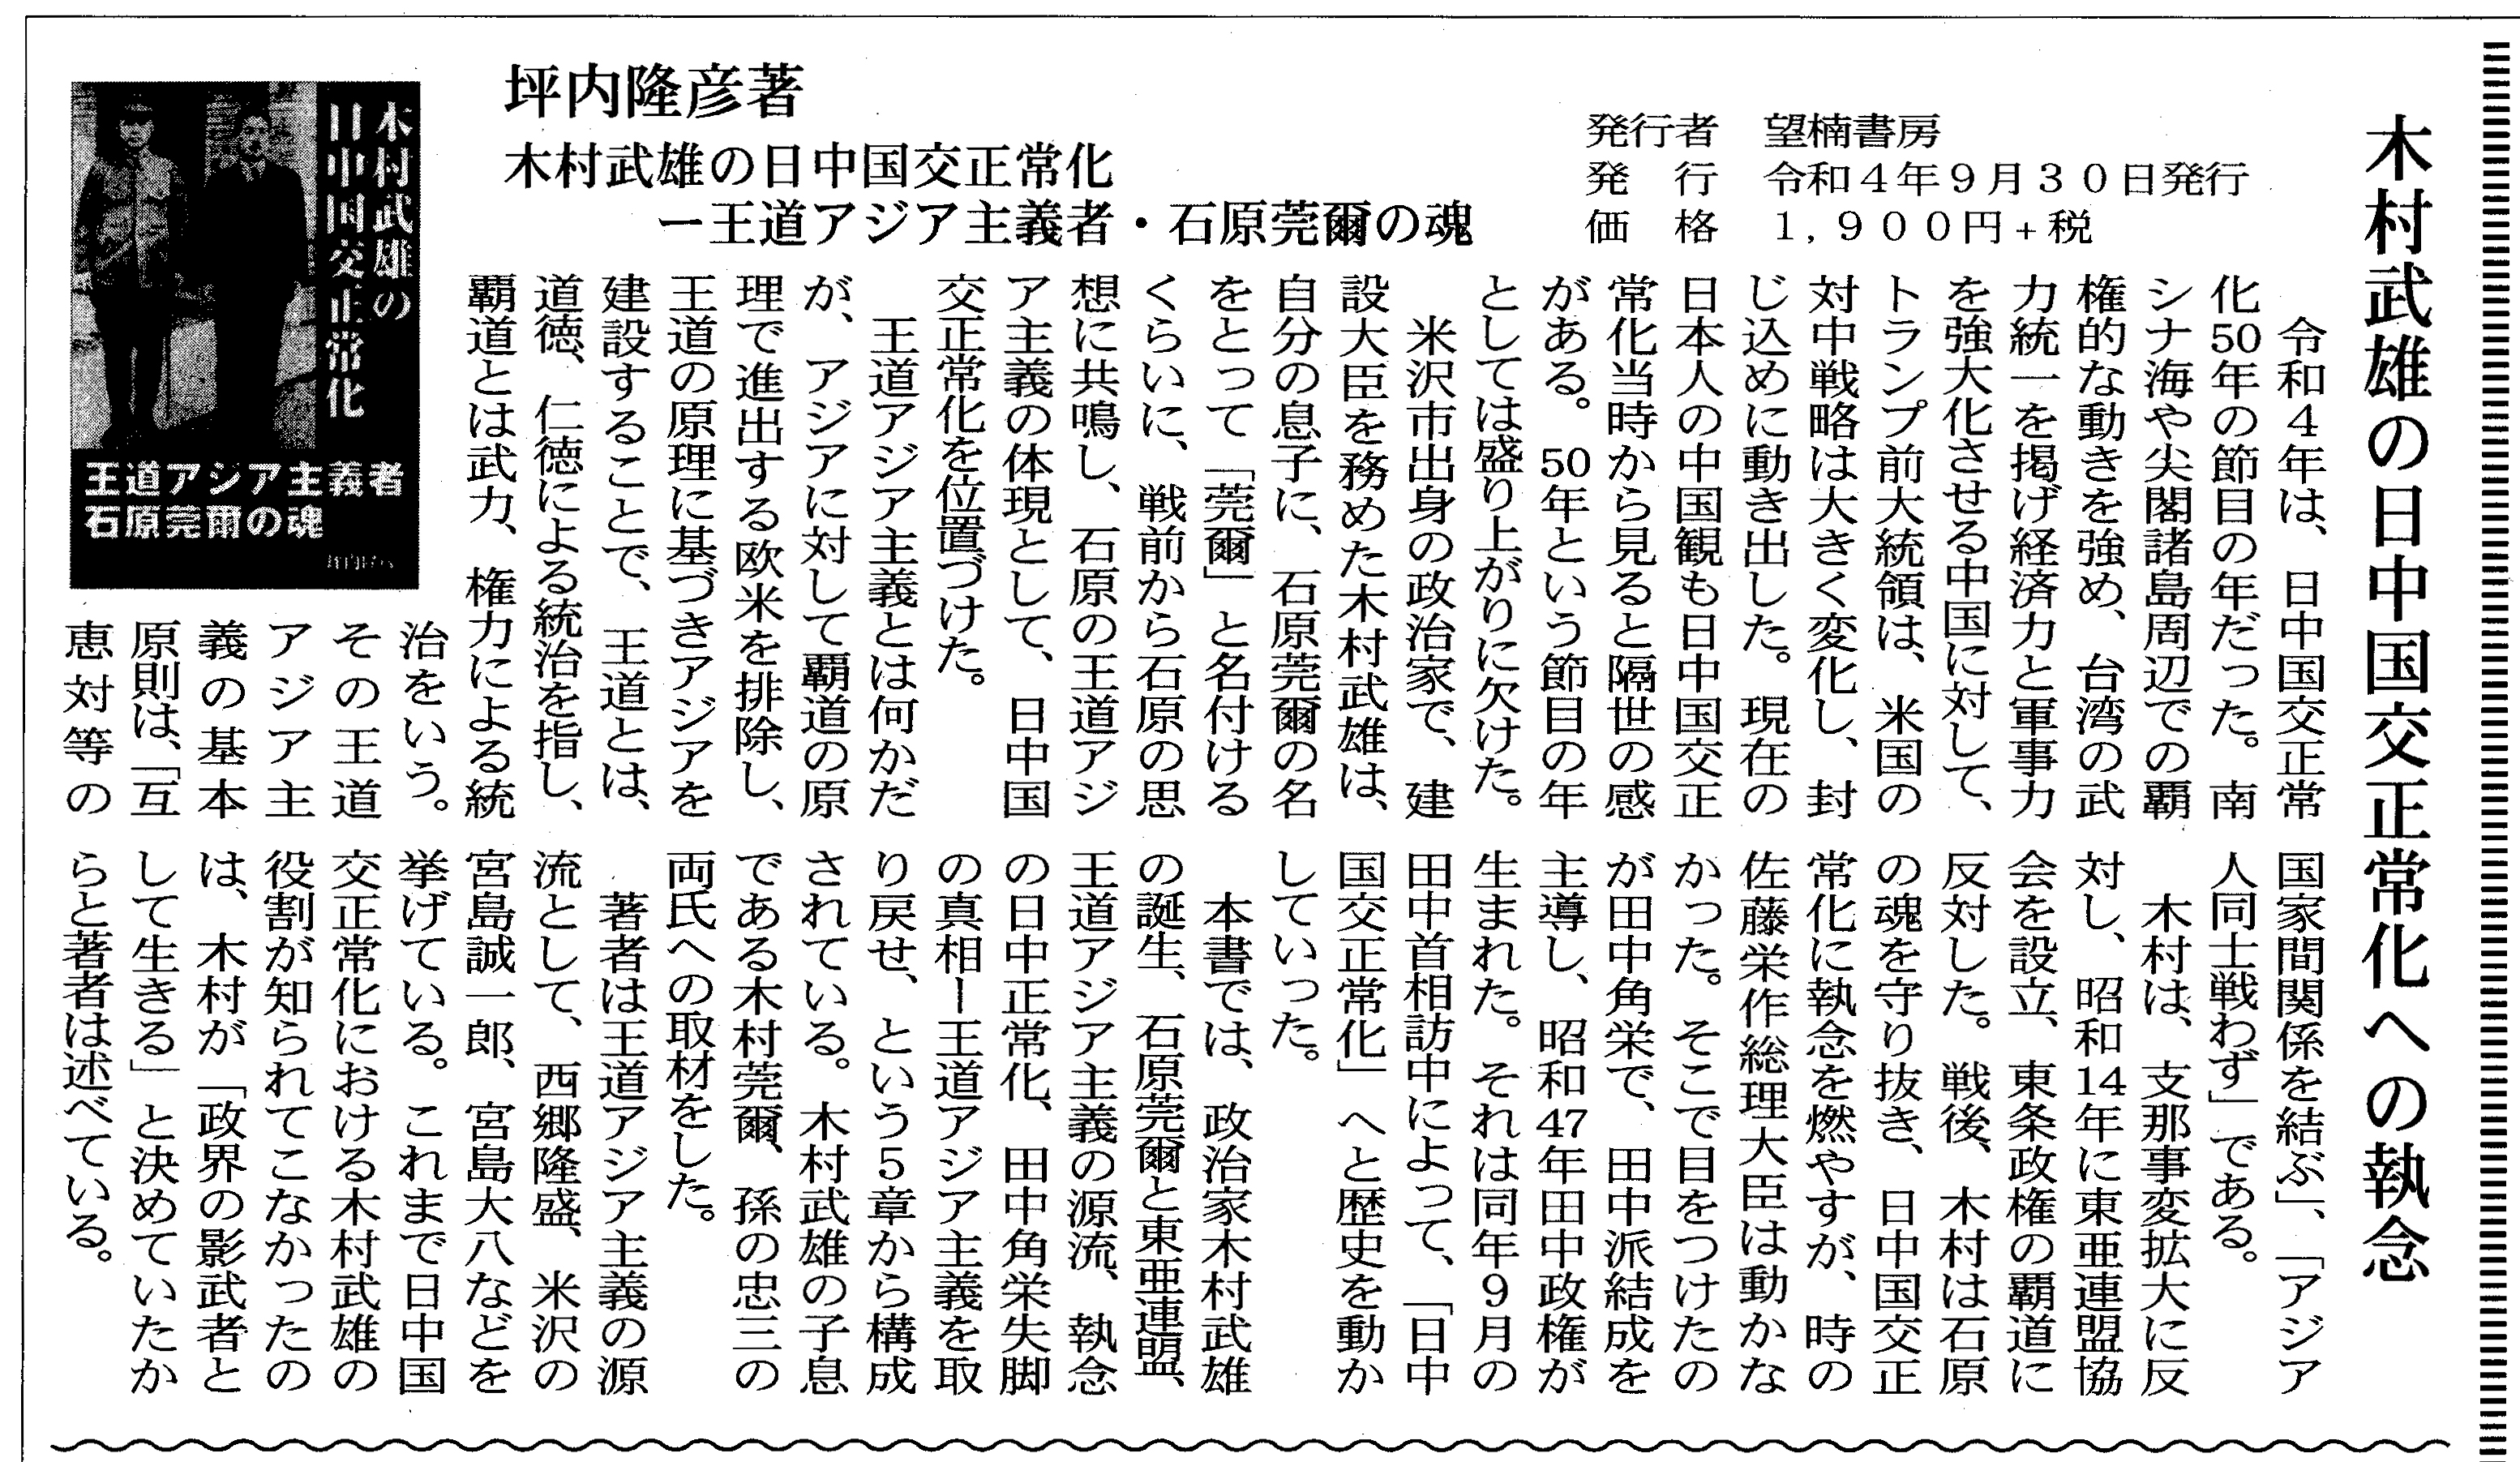 「木村武雄の日中国交正常化への執念」『米沢日報』令和5年1月1日付